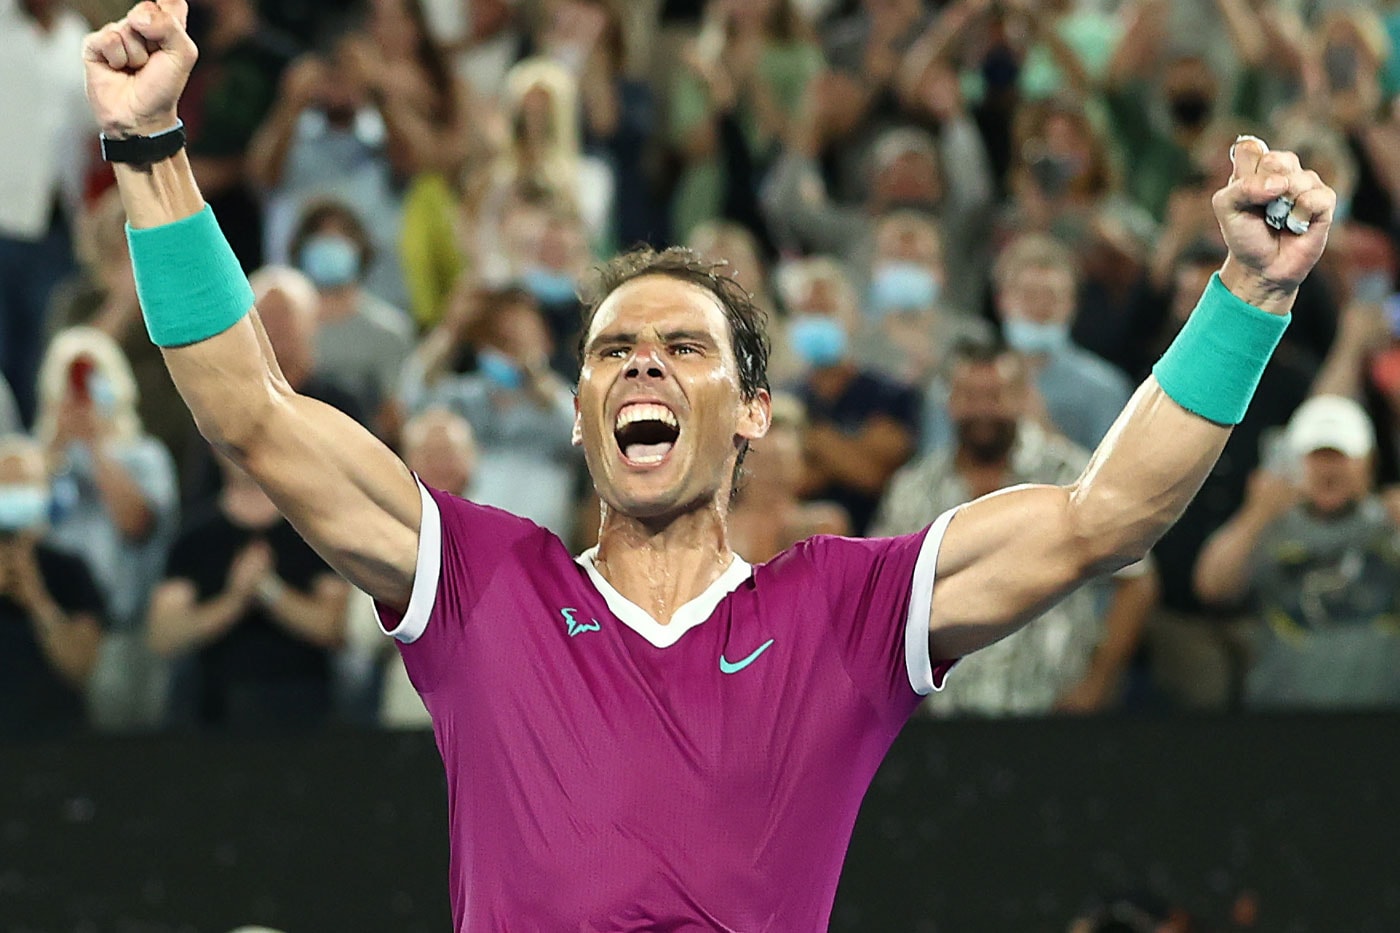 Rafael Nadal Wins Australian Open for Record 21st Grand Slam Title Daniil medevdev comeback foot injury covid 19 fans umpire roger federer novak djokovic 2022 news